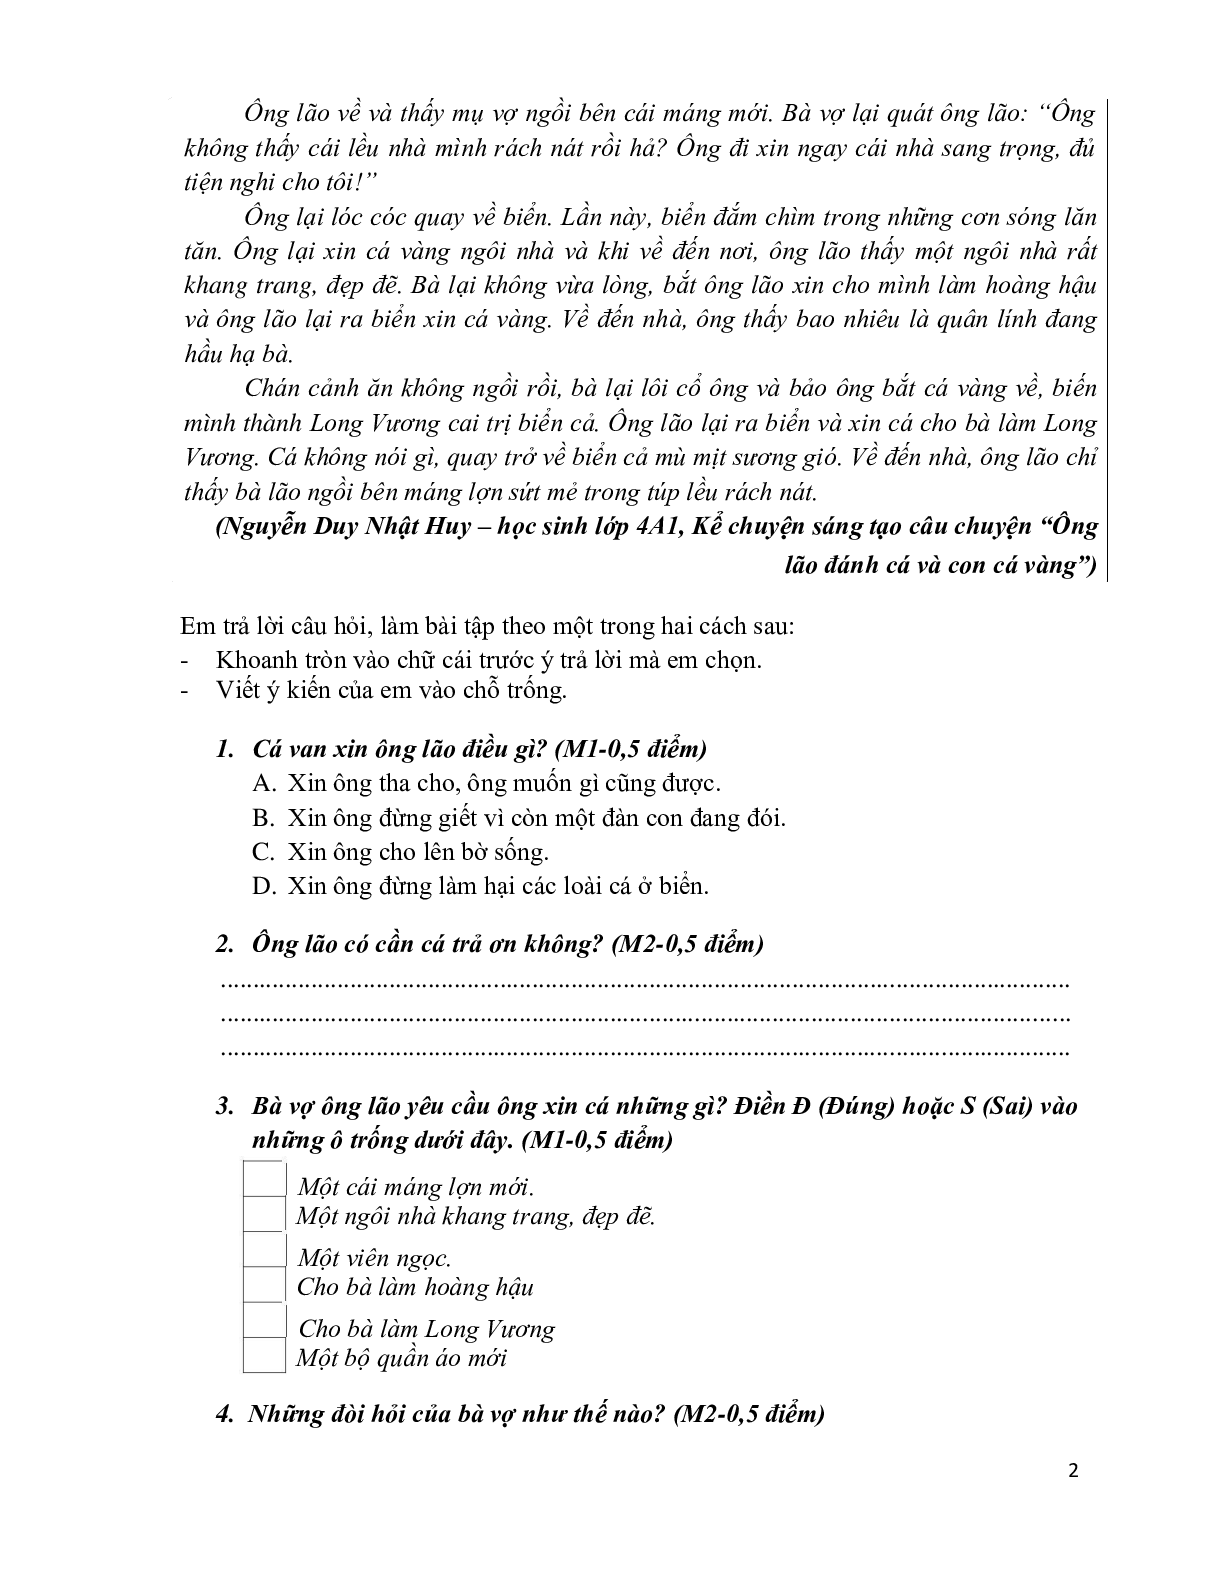 Đề kiểm tra cuối học kỳ 2 môn Tiếng Việt  lớp 4 (trang 2)